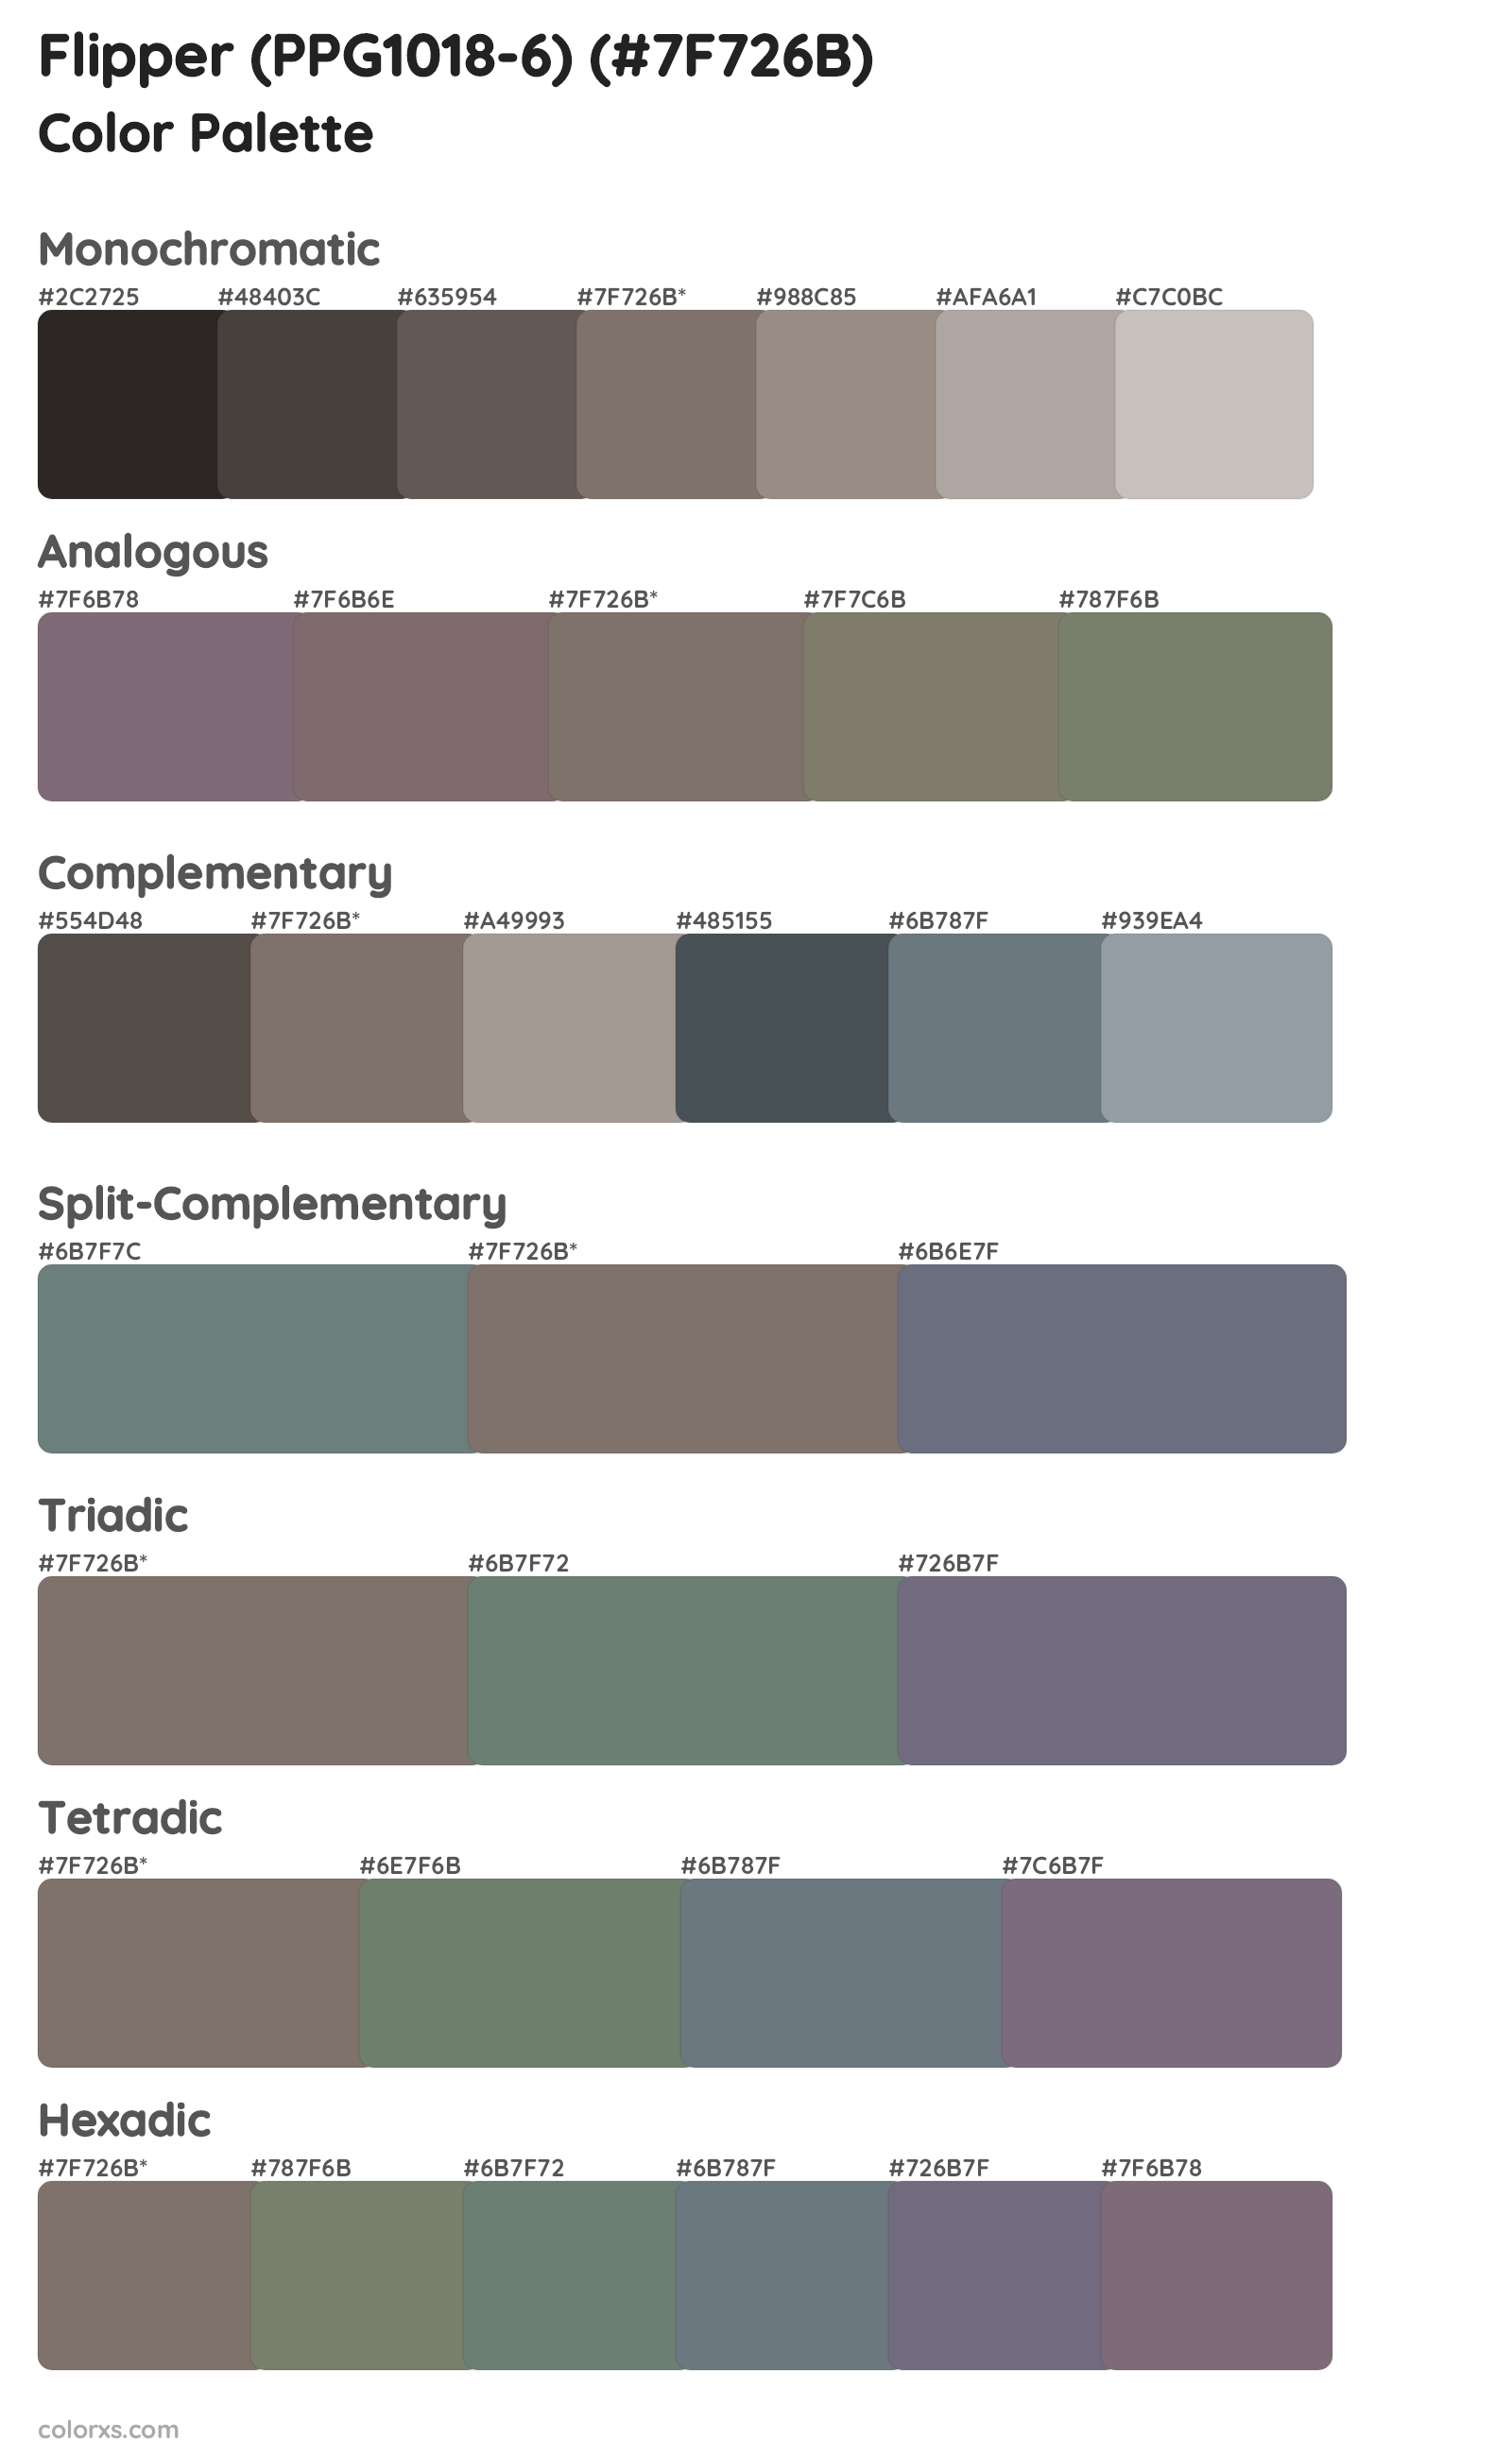 Flipper (PPG1018-6) Color Scheme Palettes